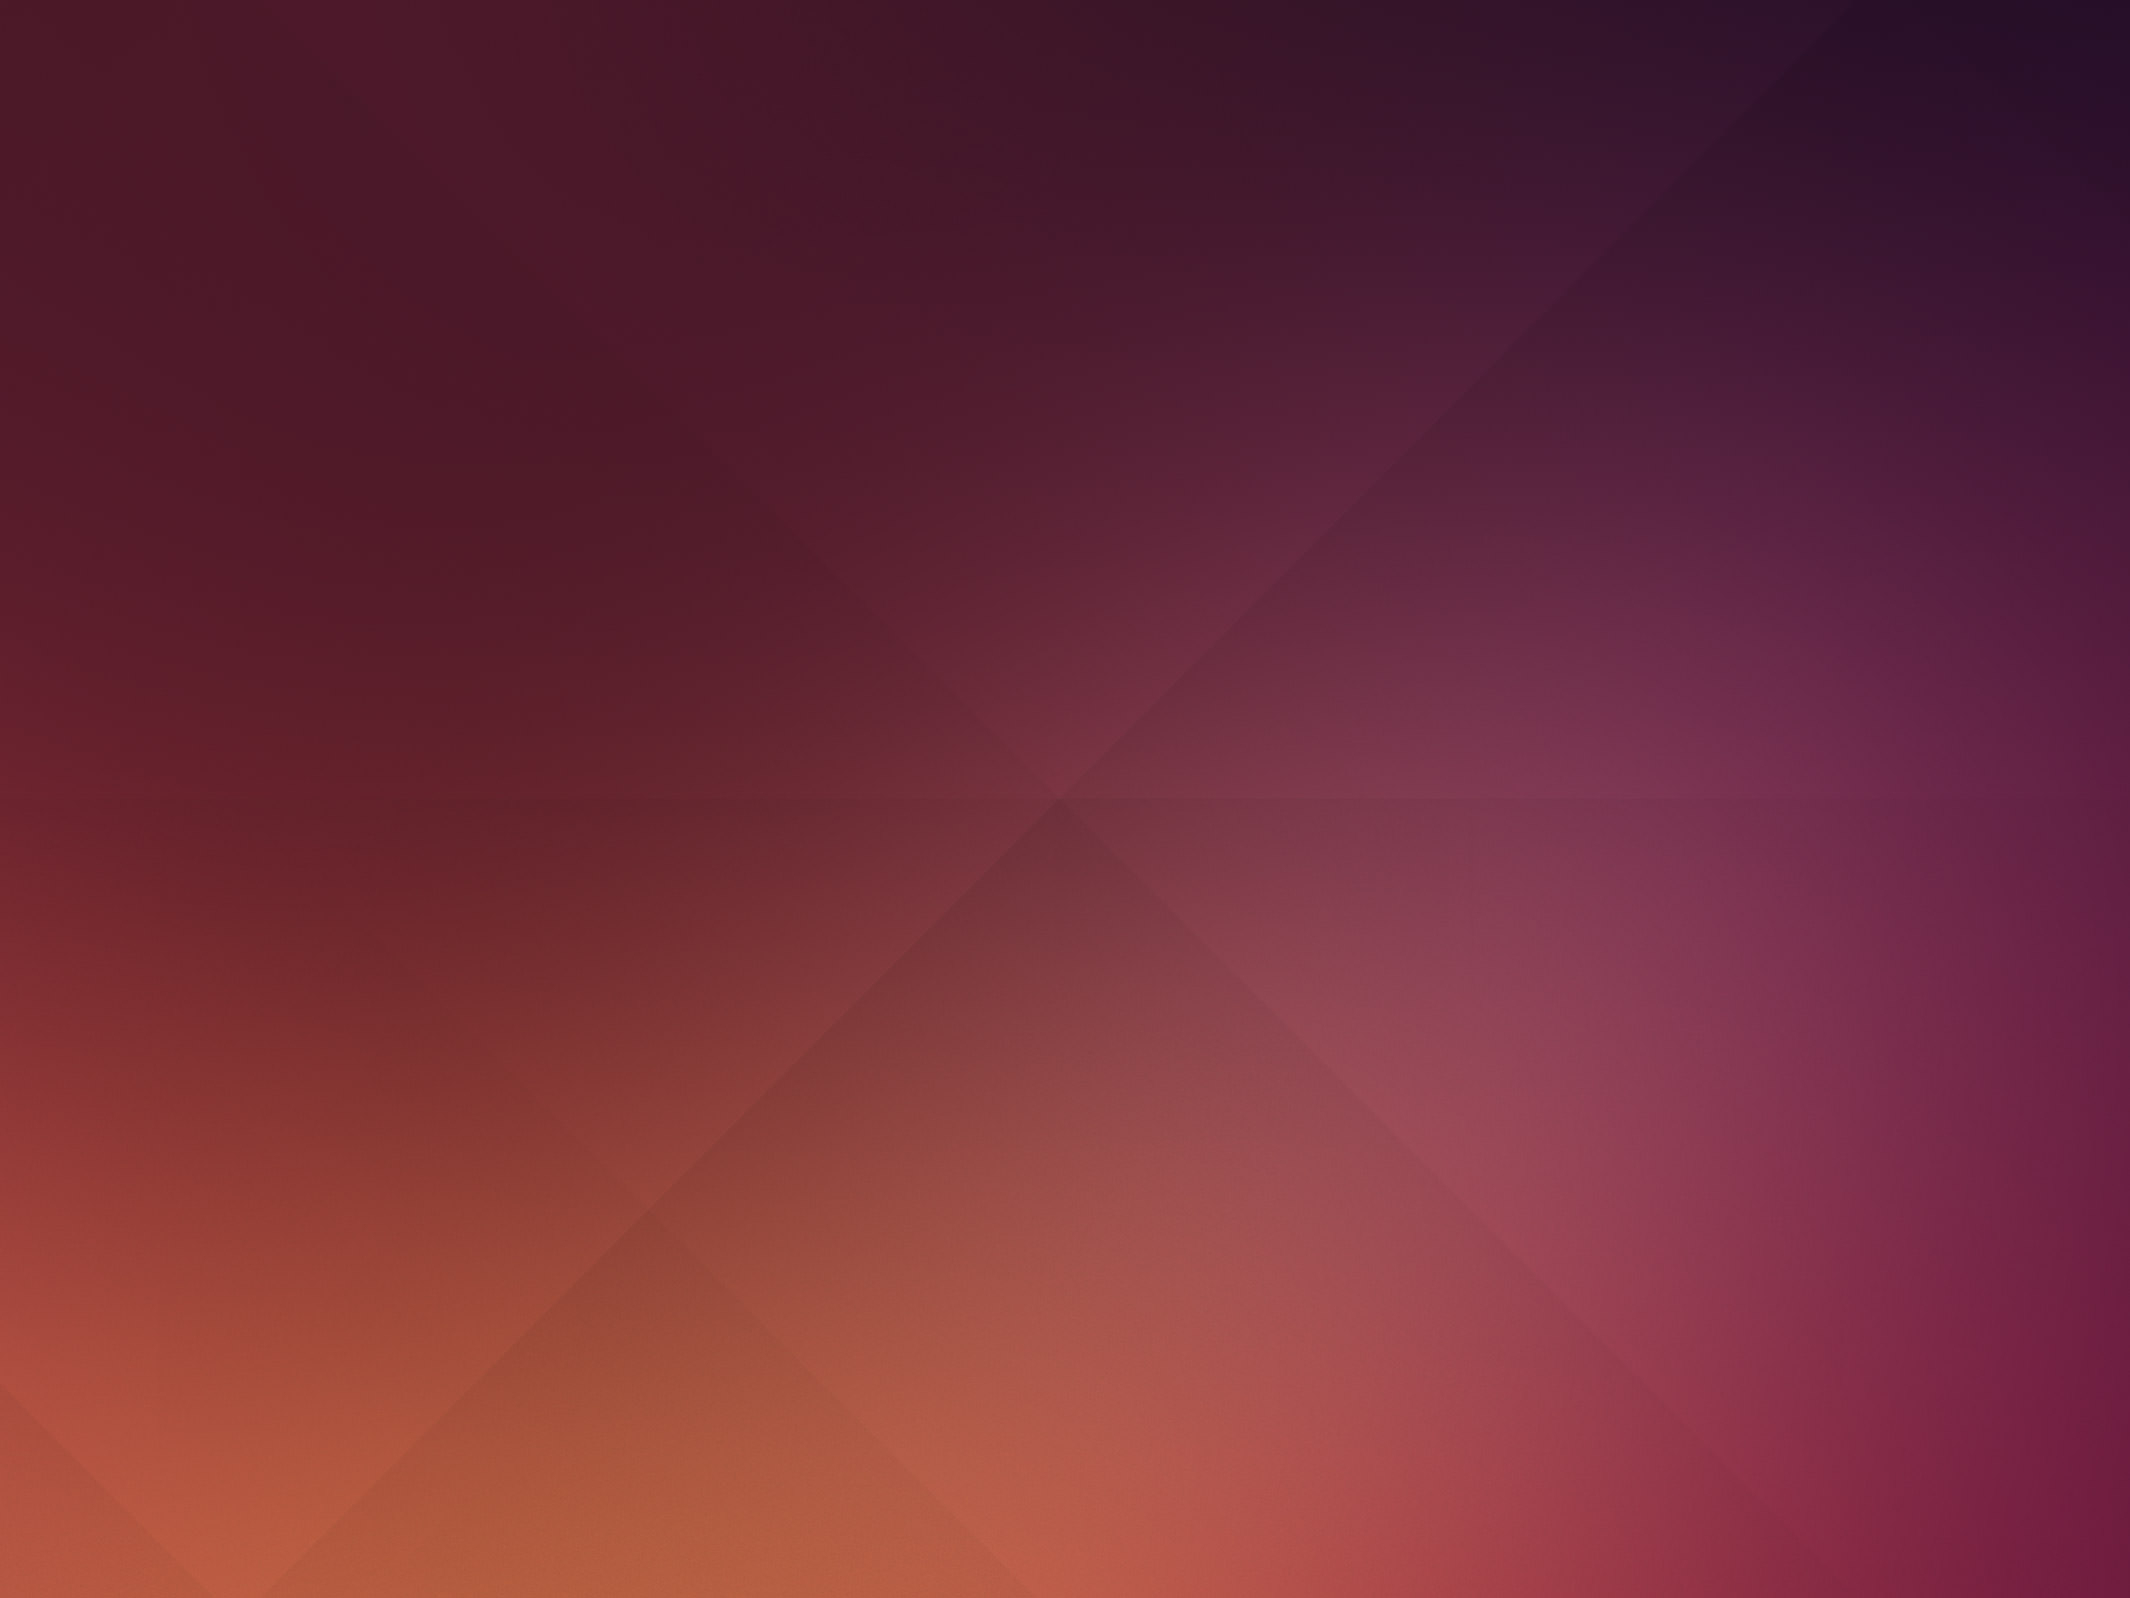 2130x1598 60 Beautiful Ubuntu Desktop Wallpapers Hongkiat